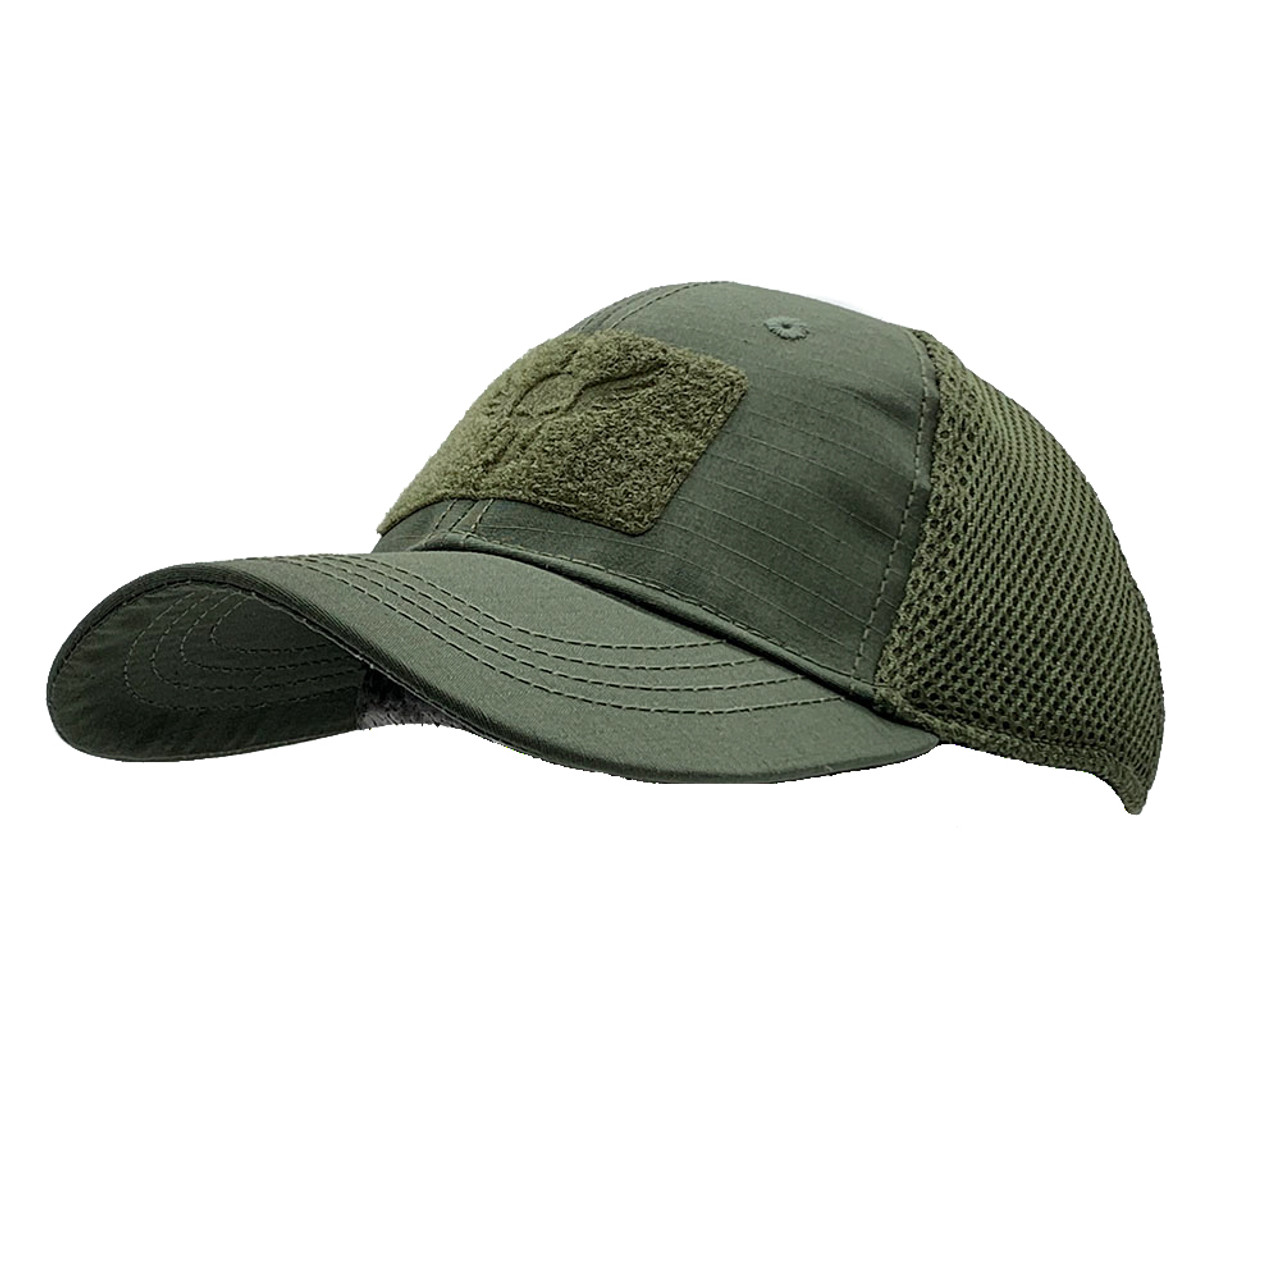 Build A Tactical Cap - Choose Hat & 2 Patches